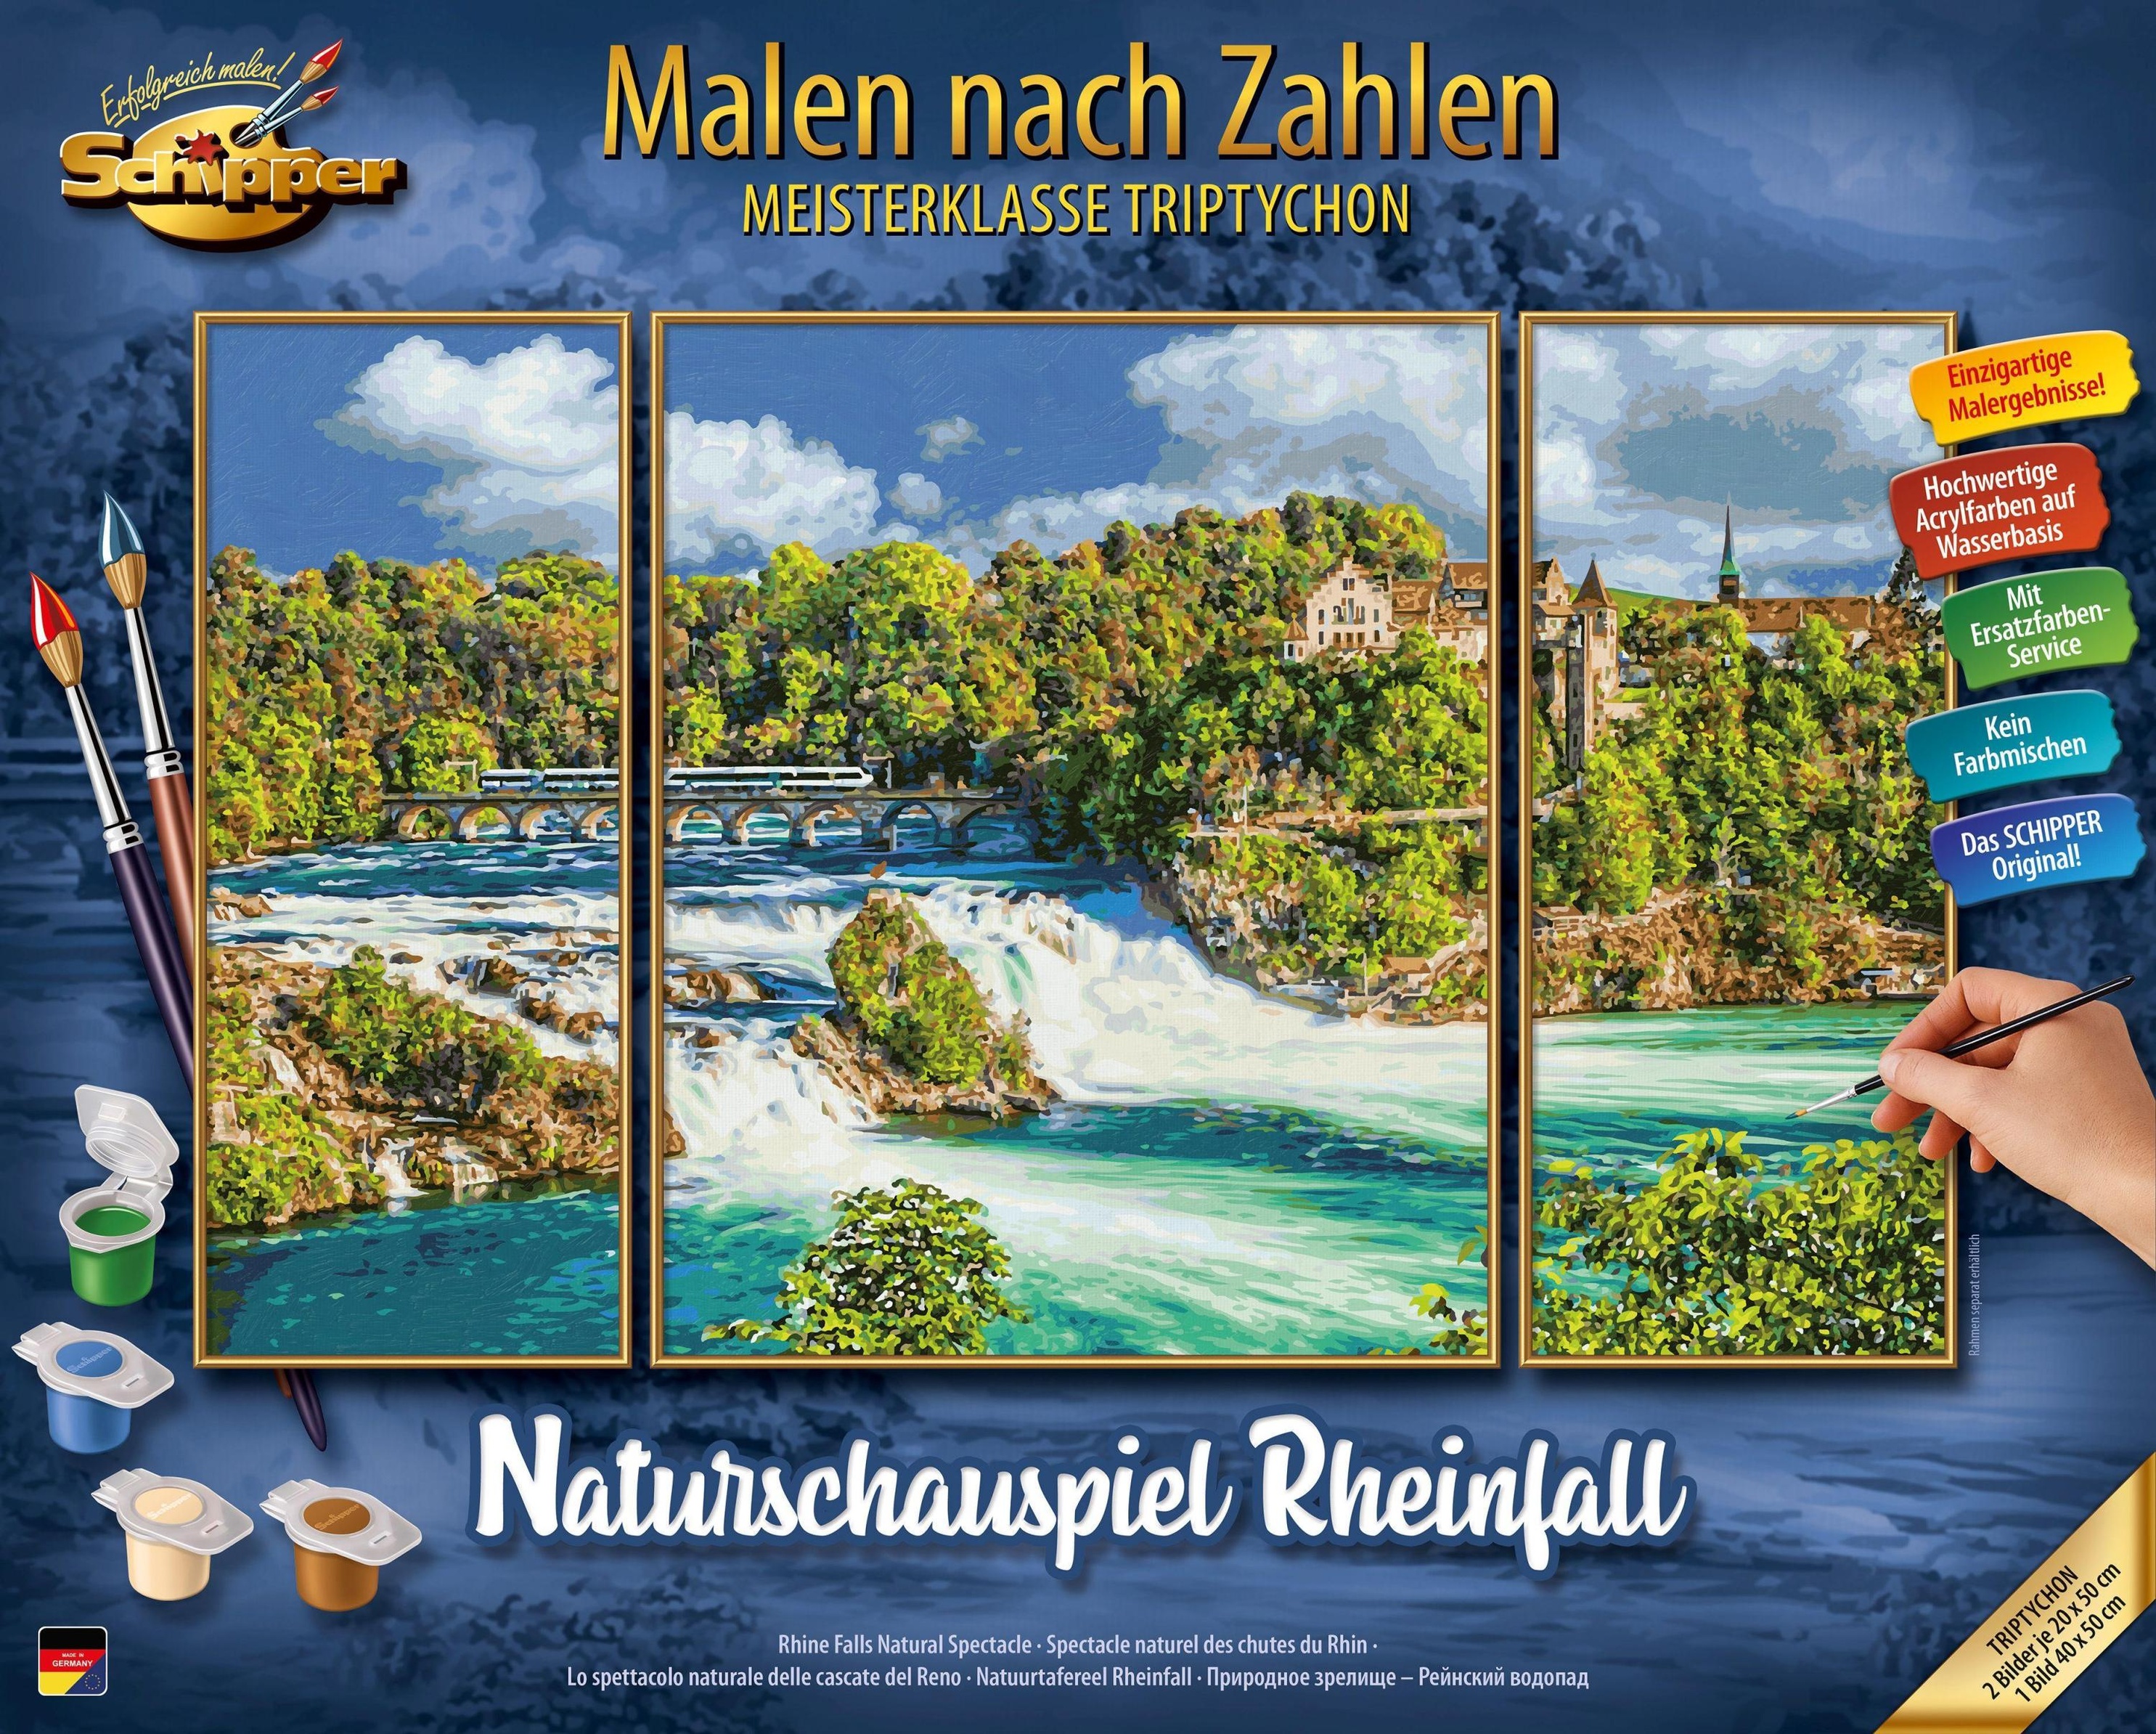 Naturschauspiel - Zahlen nach Malen Rheinfall